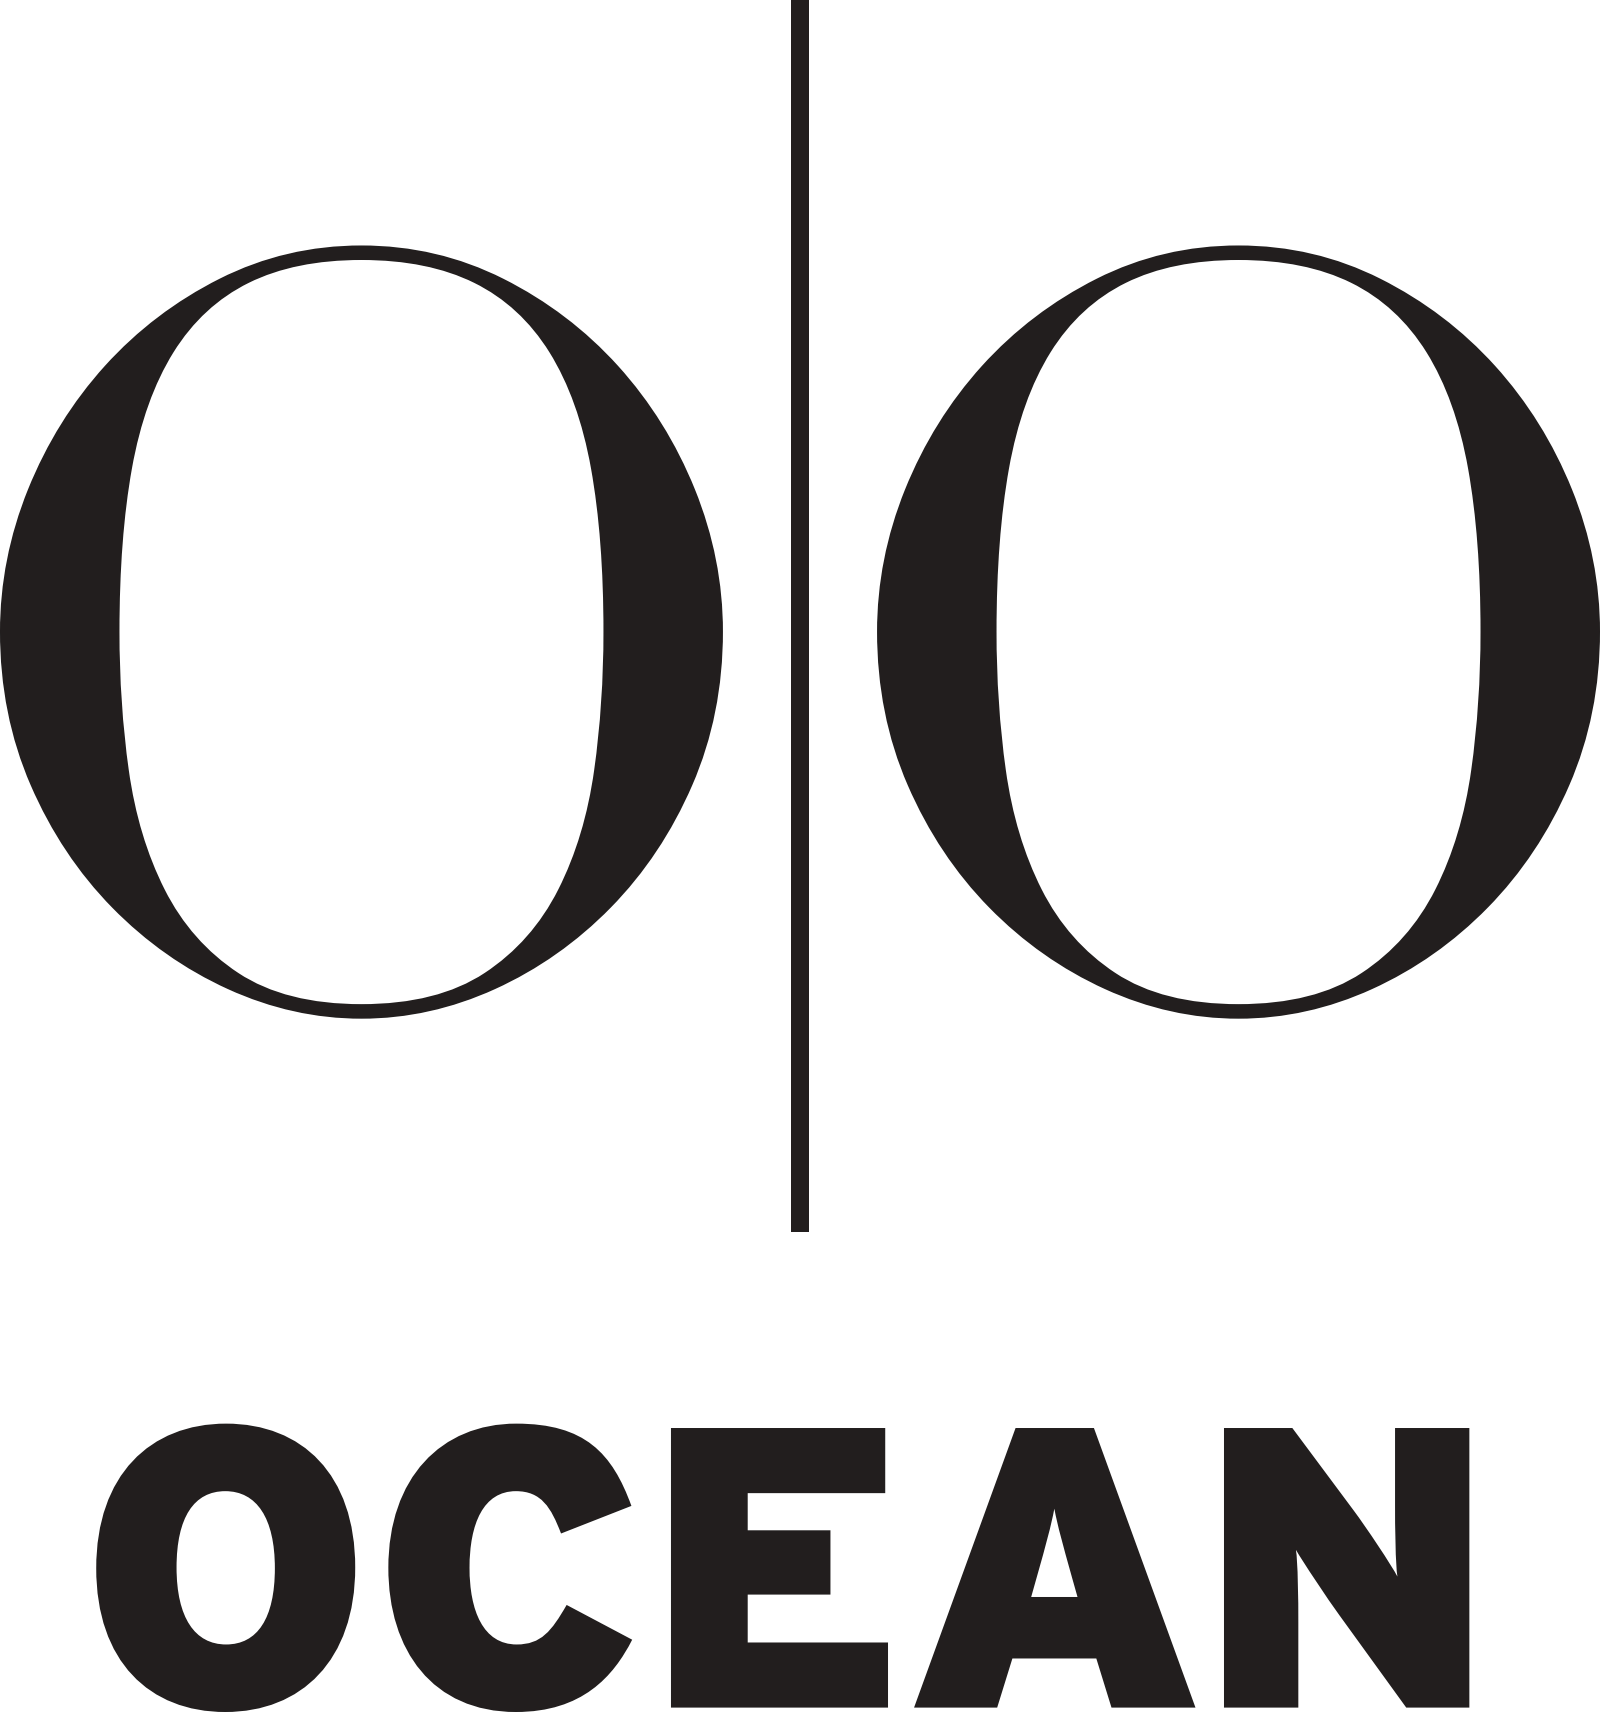 Ocean Outdoor Norway søker Creative Sales Manager